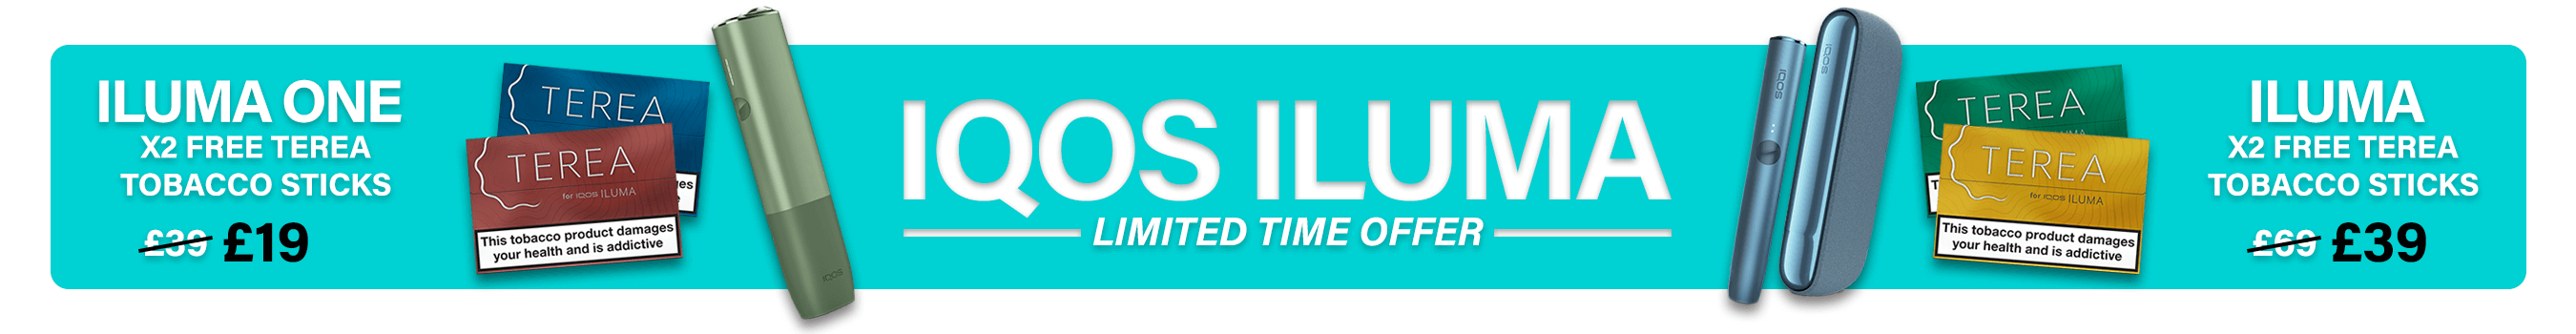 IQOS Iluma Promotion